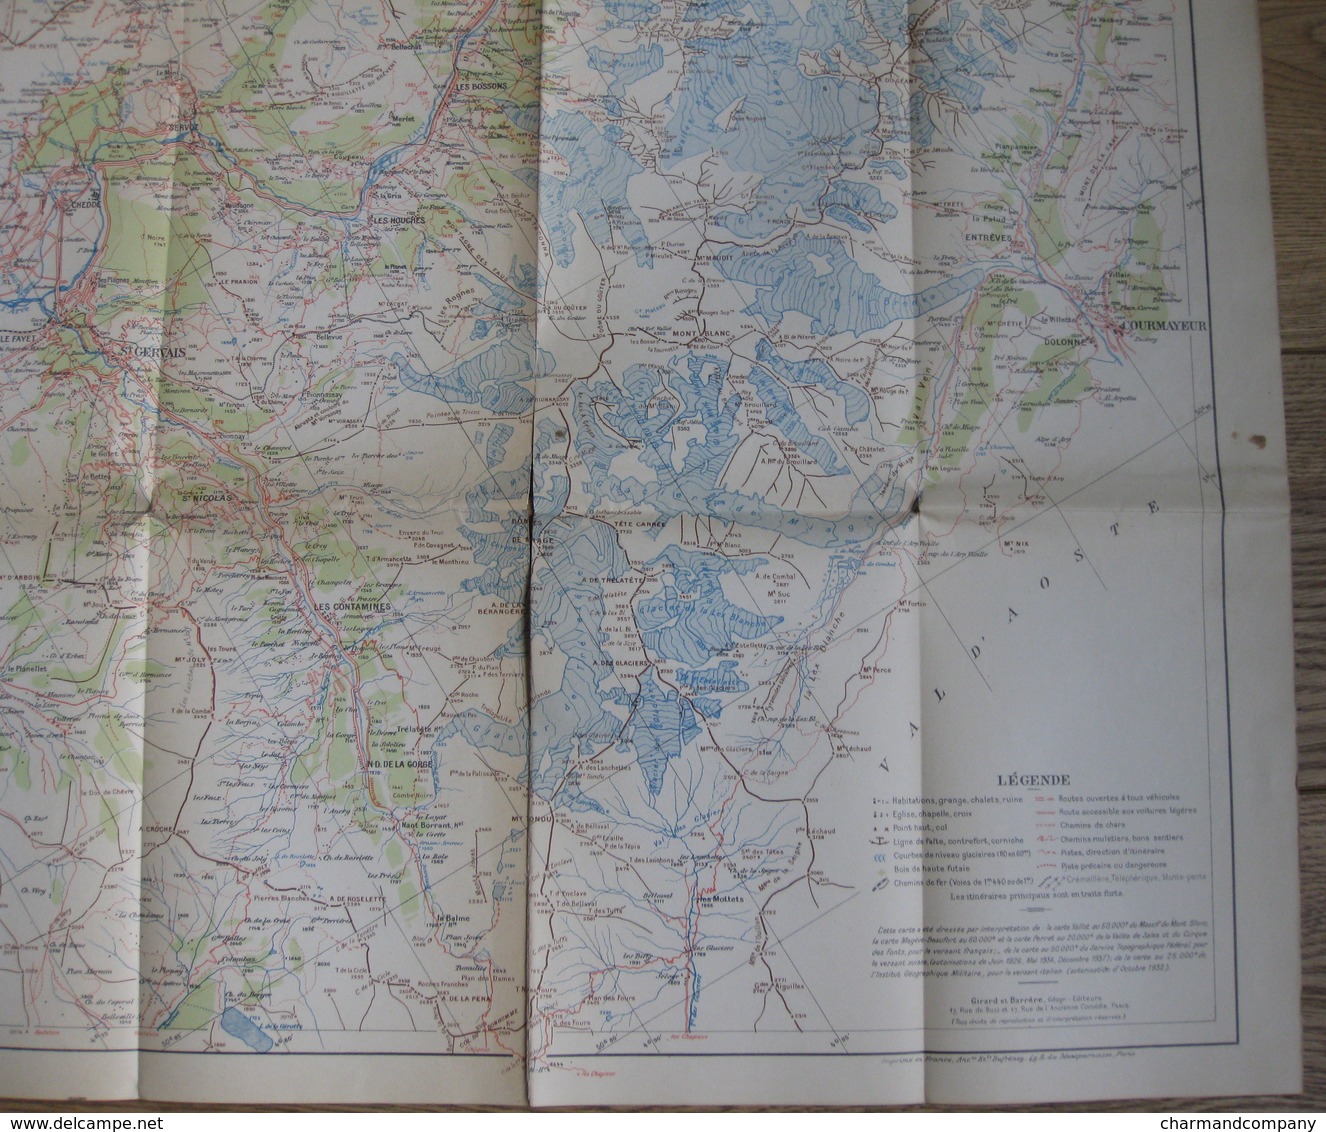 Carte VALLOT 1949 - 1:60.000 - Tour Du Mont Blanc - Sixt - Courmayeur - Chamonix - Martigny - Megève  - 7 Scans - Geographical Maps